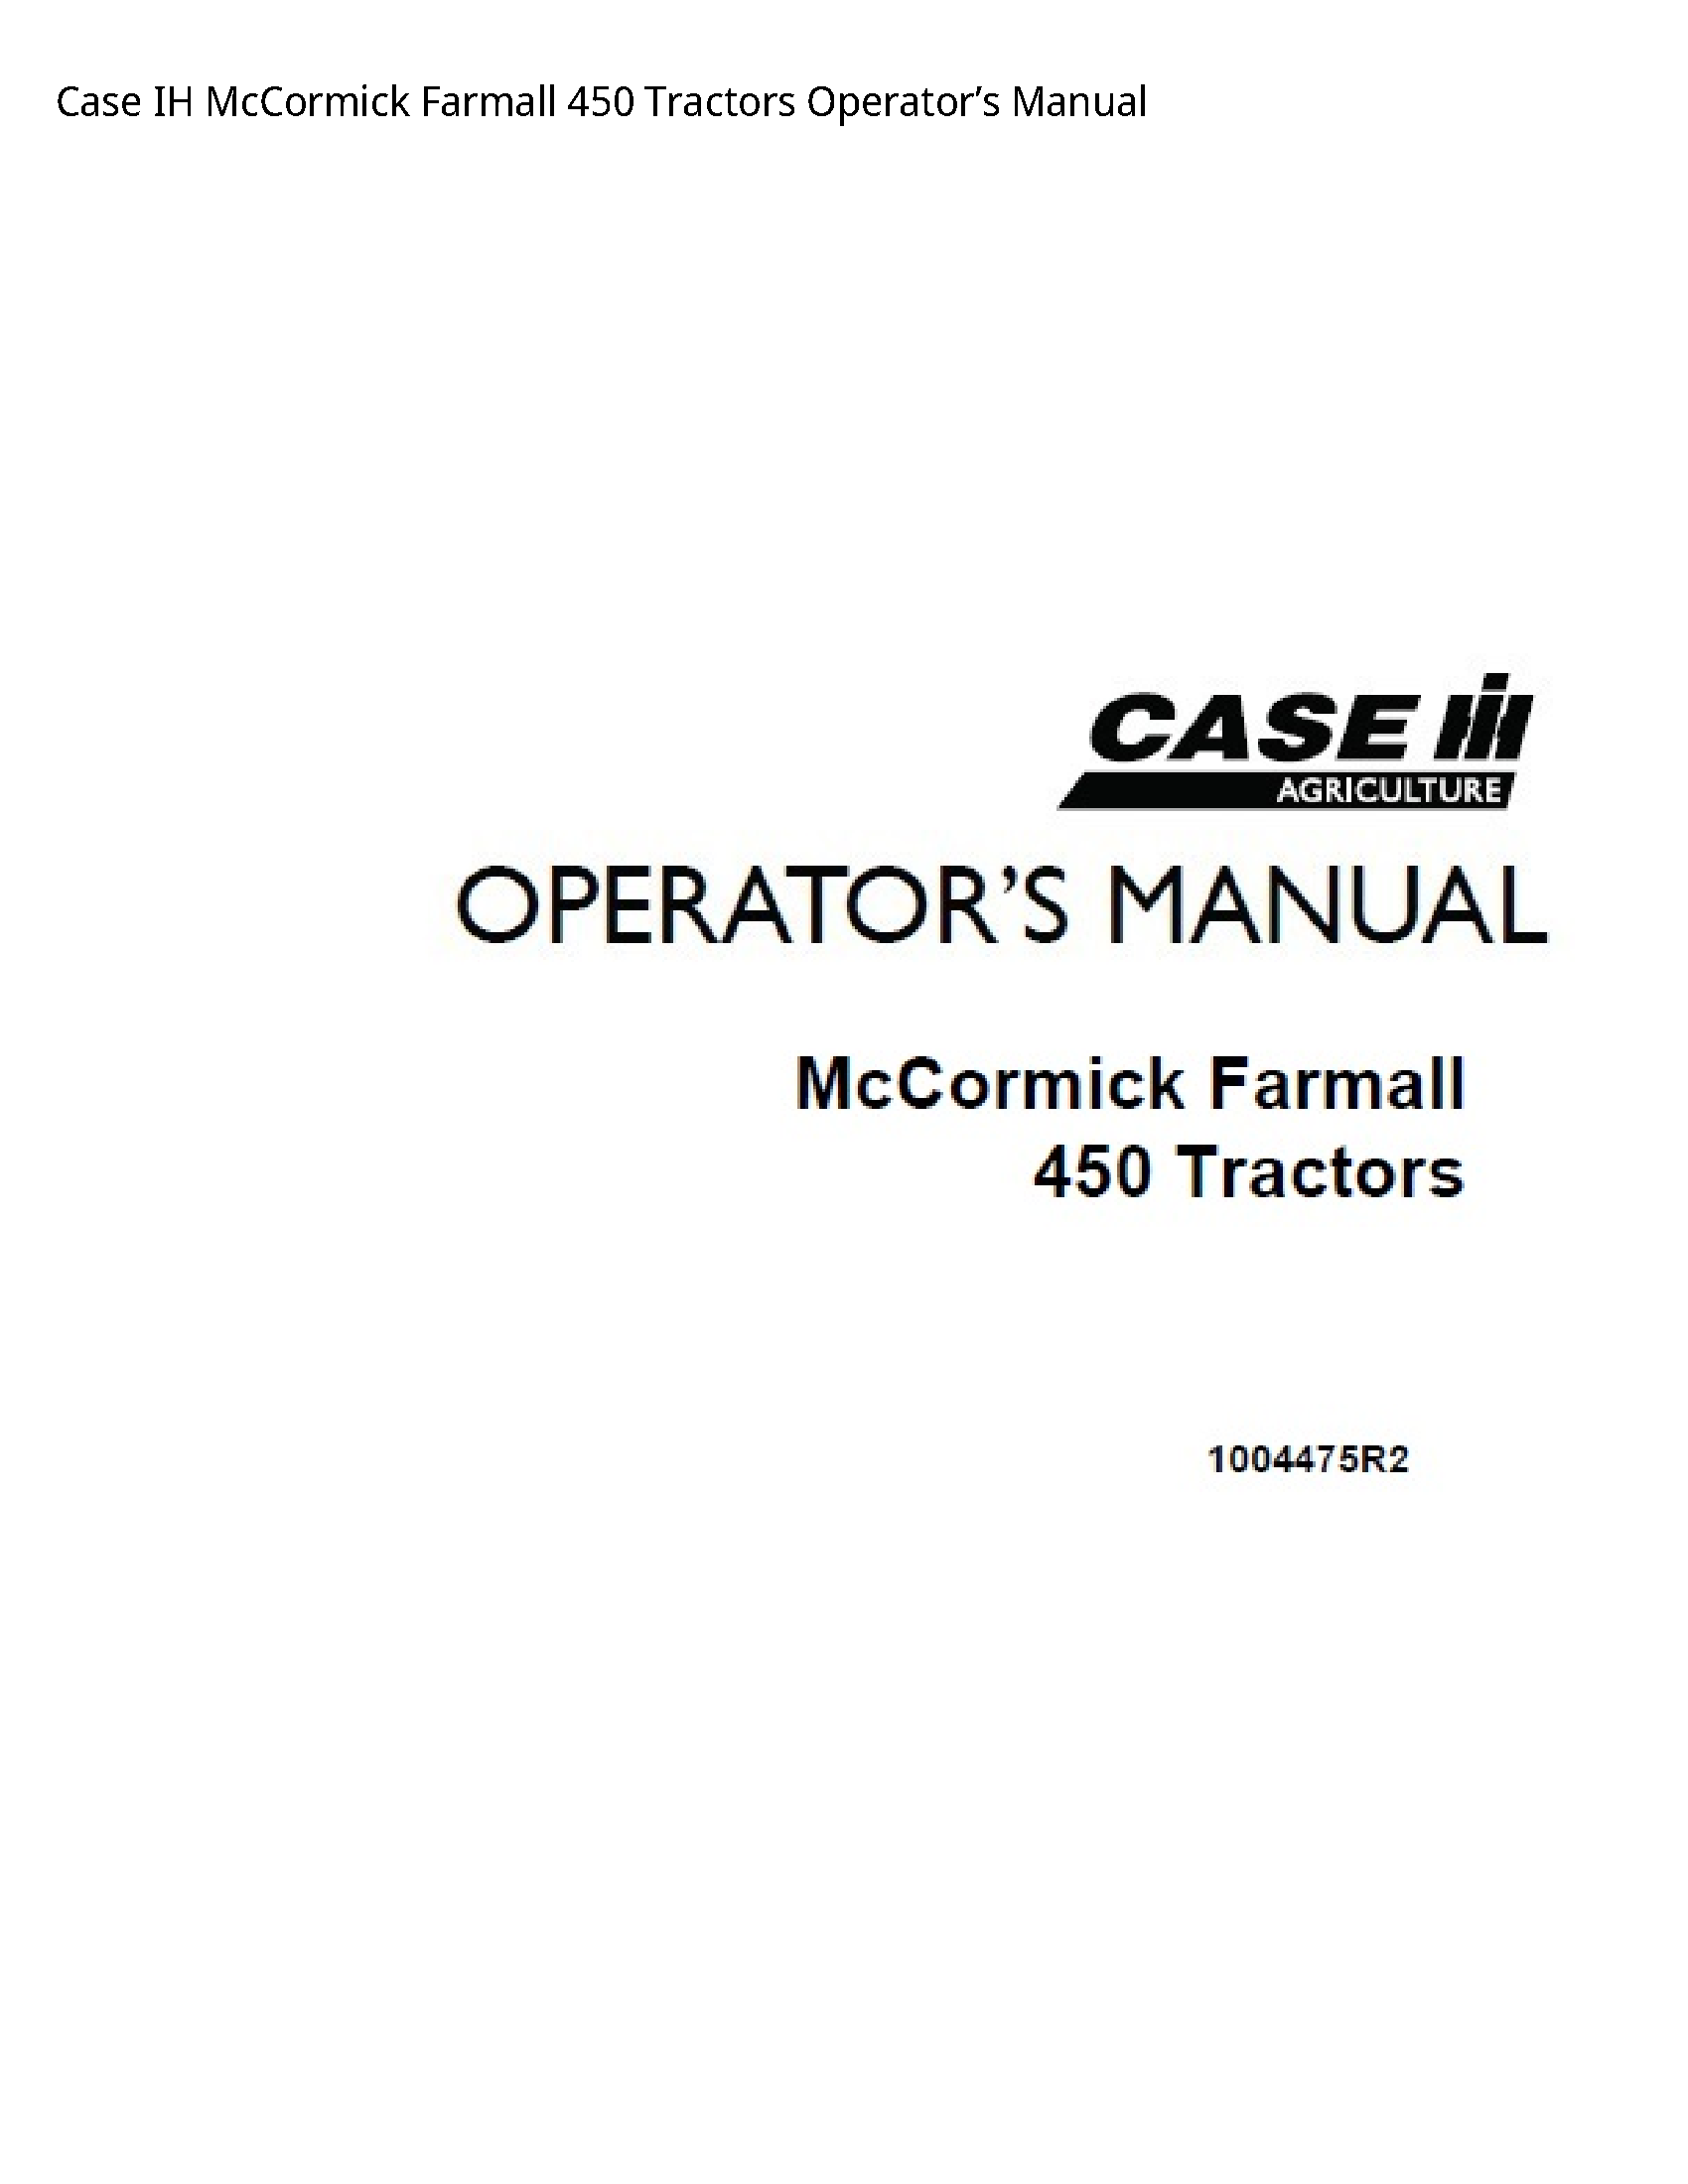 Case/Case IH 450 IH McCormick Farmall Tractors Operator’s manual